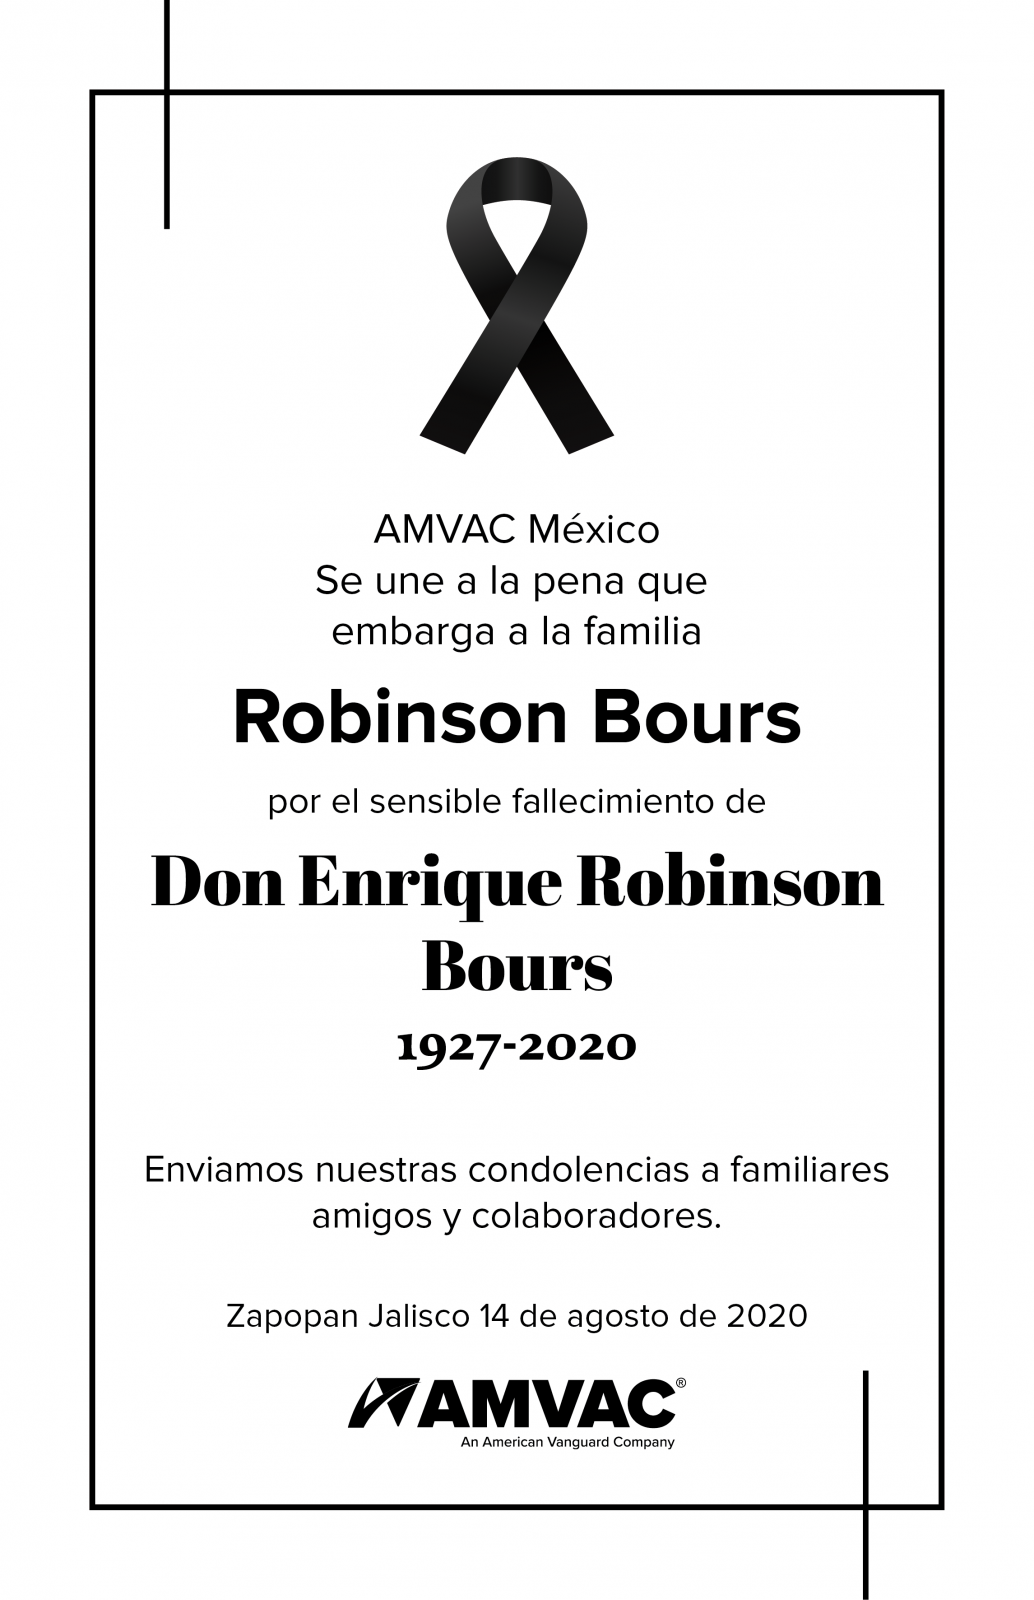 Lamentamos el sensible fallecimiento de Don Enrique Robinson Bours